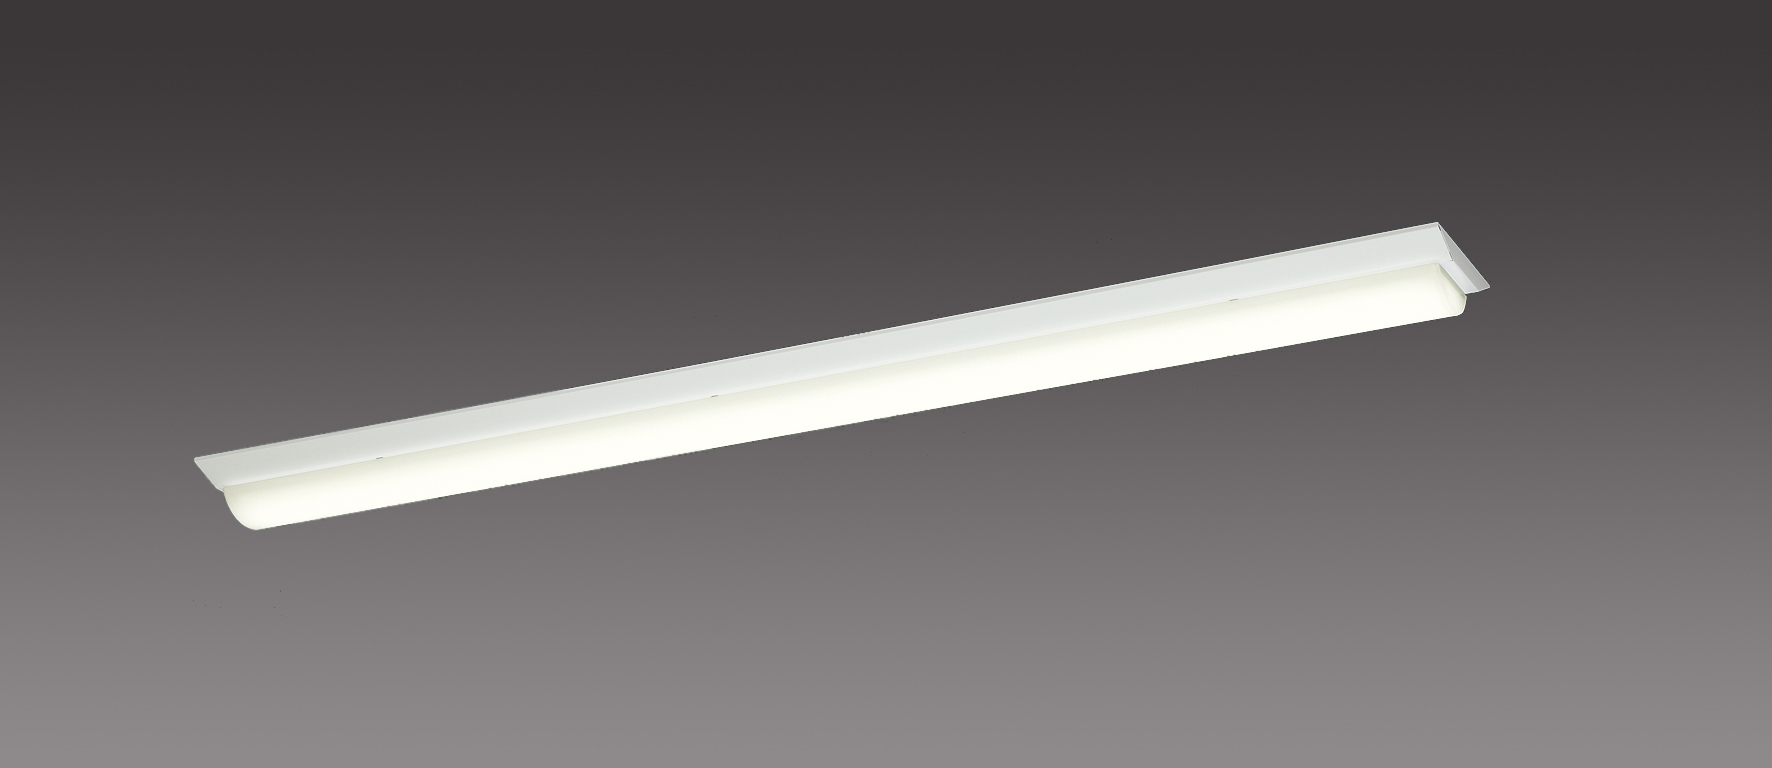 特別オファー SHARP LED照明 DL-Ｍ401Ｎ ライトモジュール LED電球 